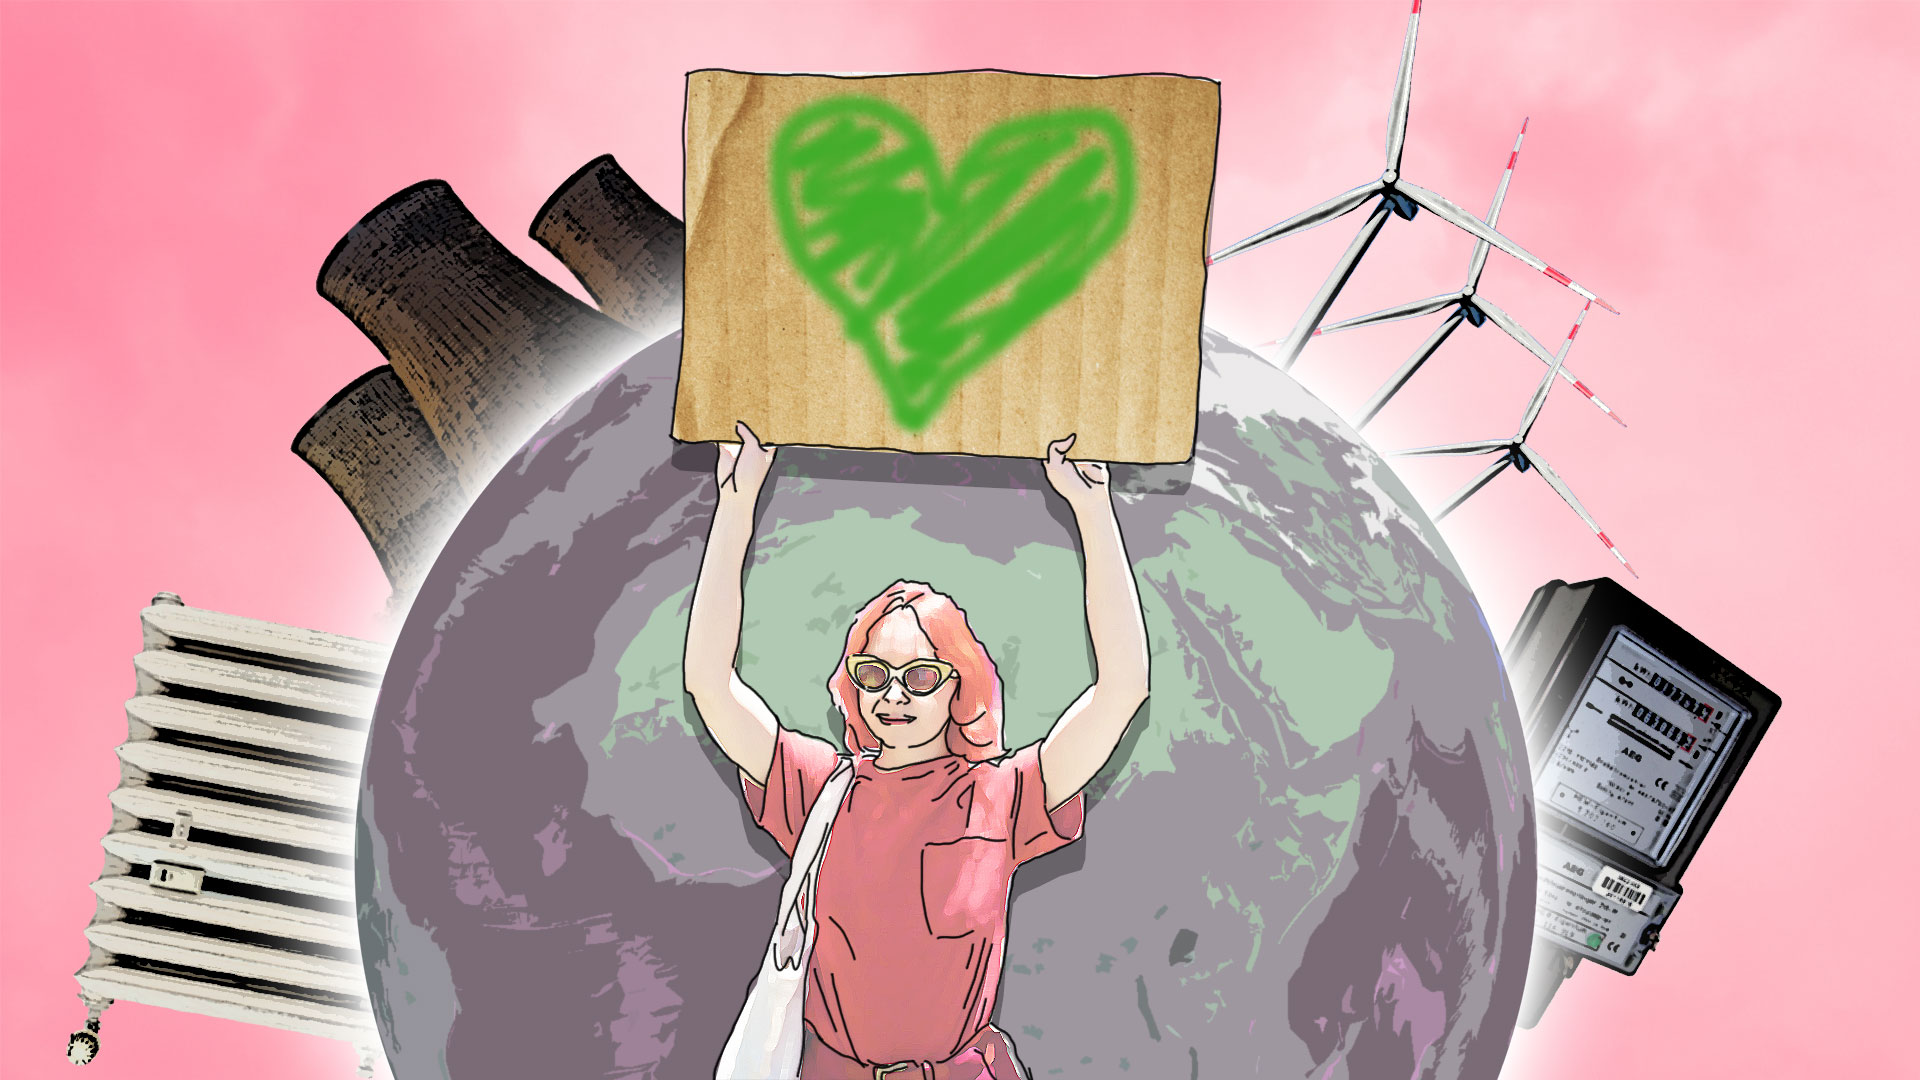 Grafik mit einer junge Frau, die ein Schild mit einem grünen Herz in die Höhe hält. Dahinter ein Erdball und darum ein Heizkörper, Windräder, ein Stromzähler sowie Schornsteine.